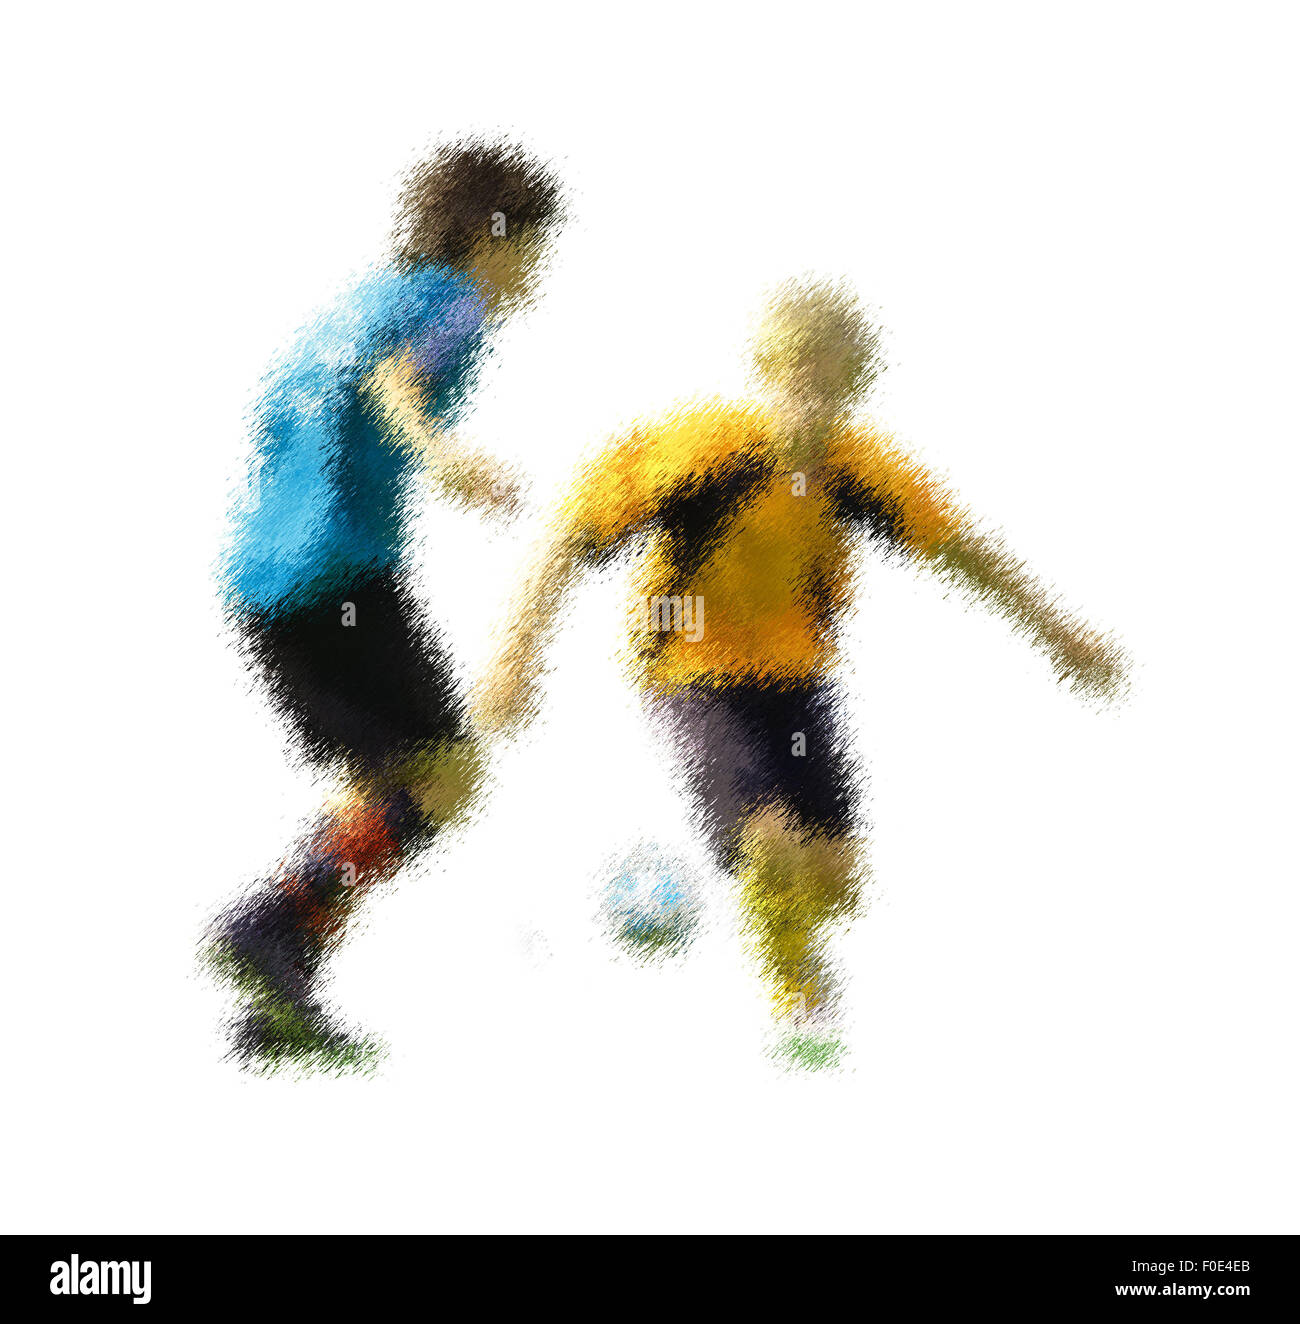 Blaue und gelbe Spieler. Abstrakte digitale Illustration von Fußball Fußballer, Jugendliche rund 15 Jahre alt, in Aktion isol Stockfoto